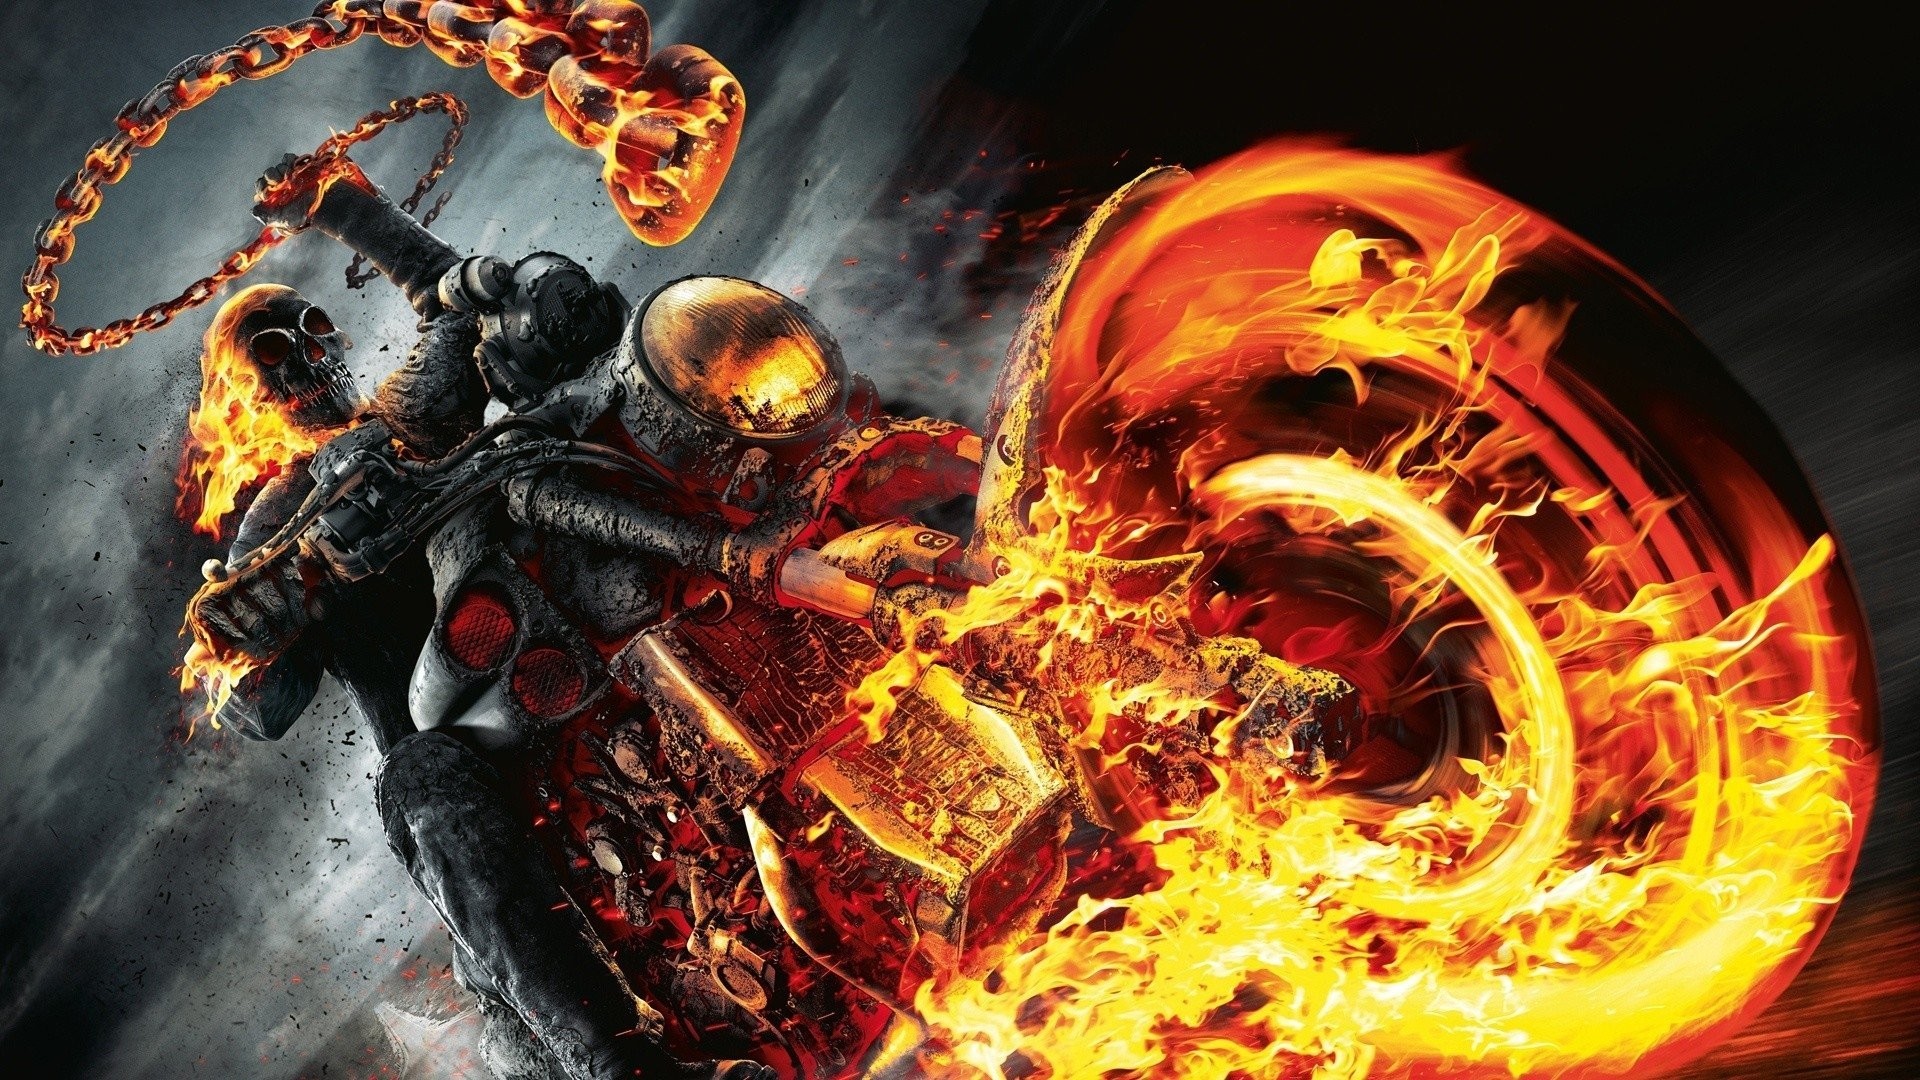 1920x1080  Ghost Rider ÃÂ· HD Wallpaper | Background Image ID:305962